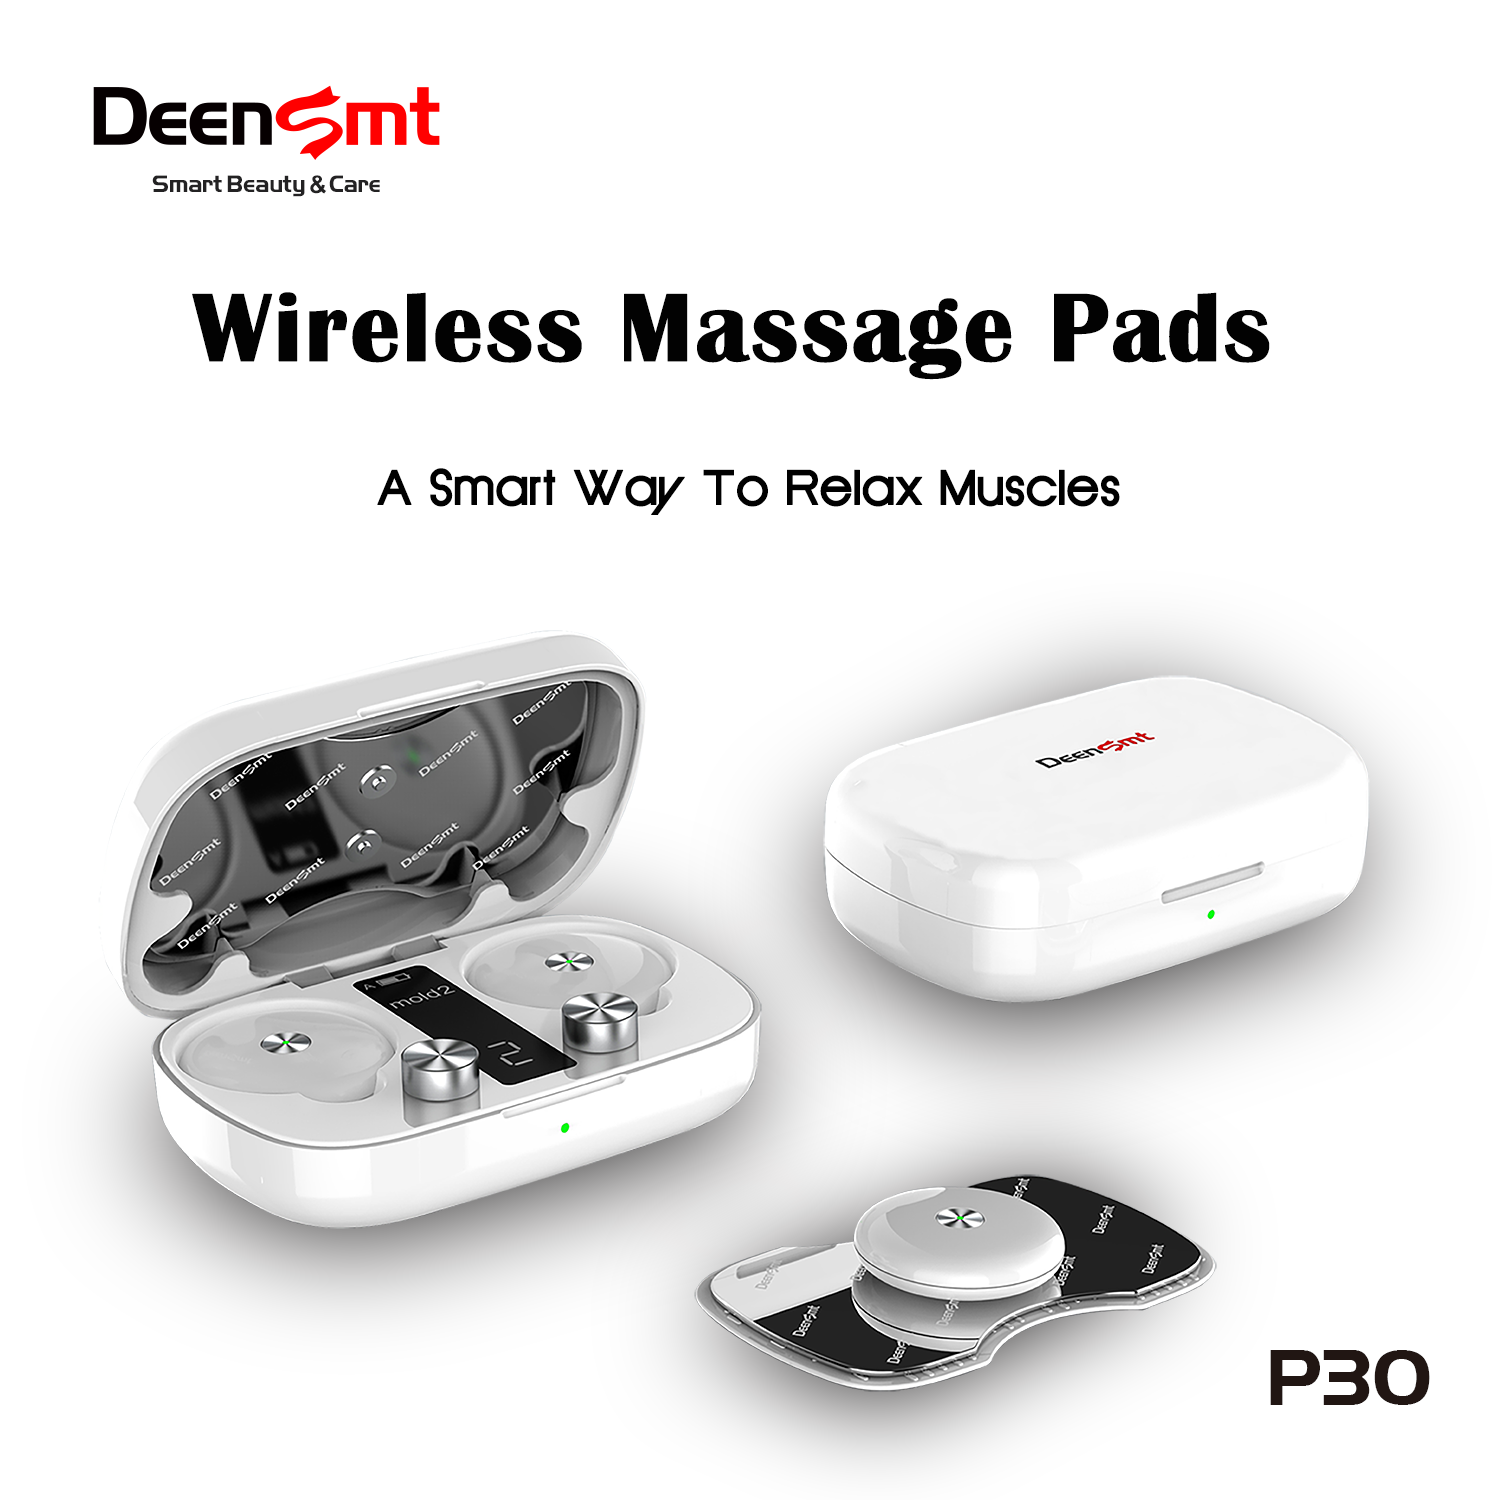 Wireless Massage Pads-P30